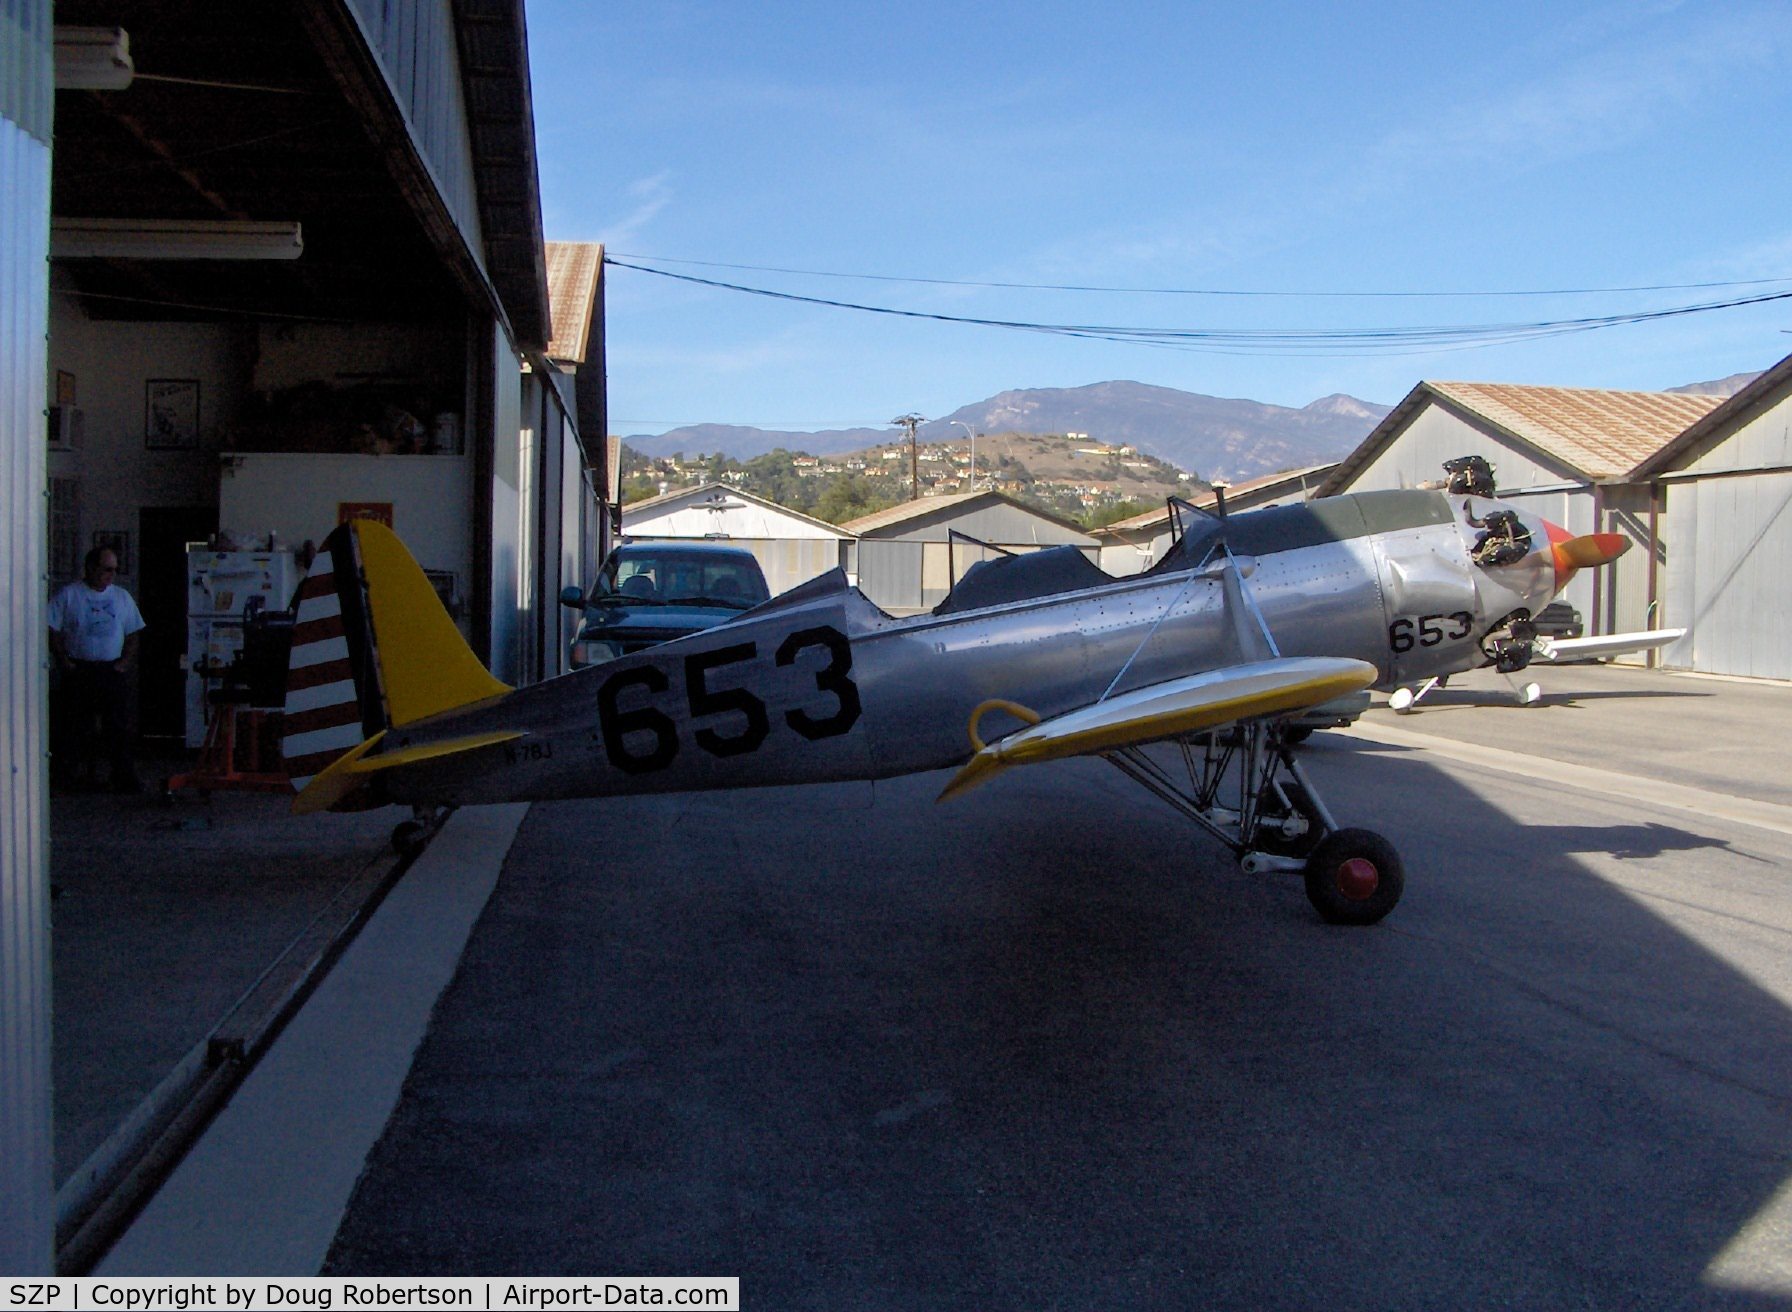 Santa Paula Airport (SZP) - Aviation Museum of Santa Paula, Hangar 4, The Richards hangar